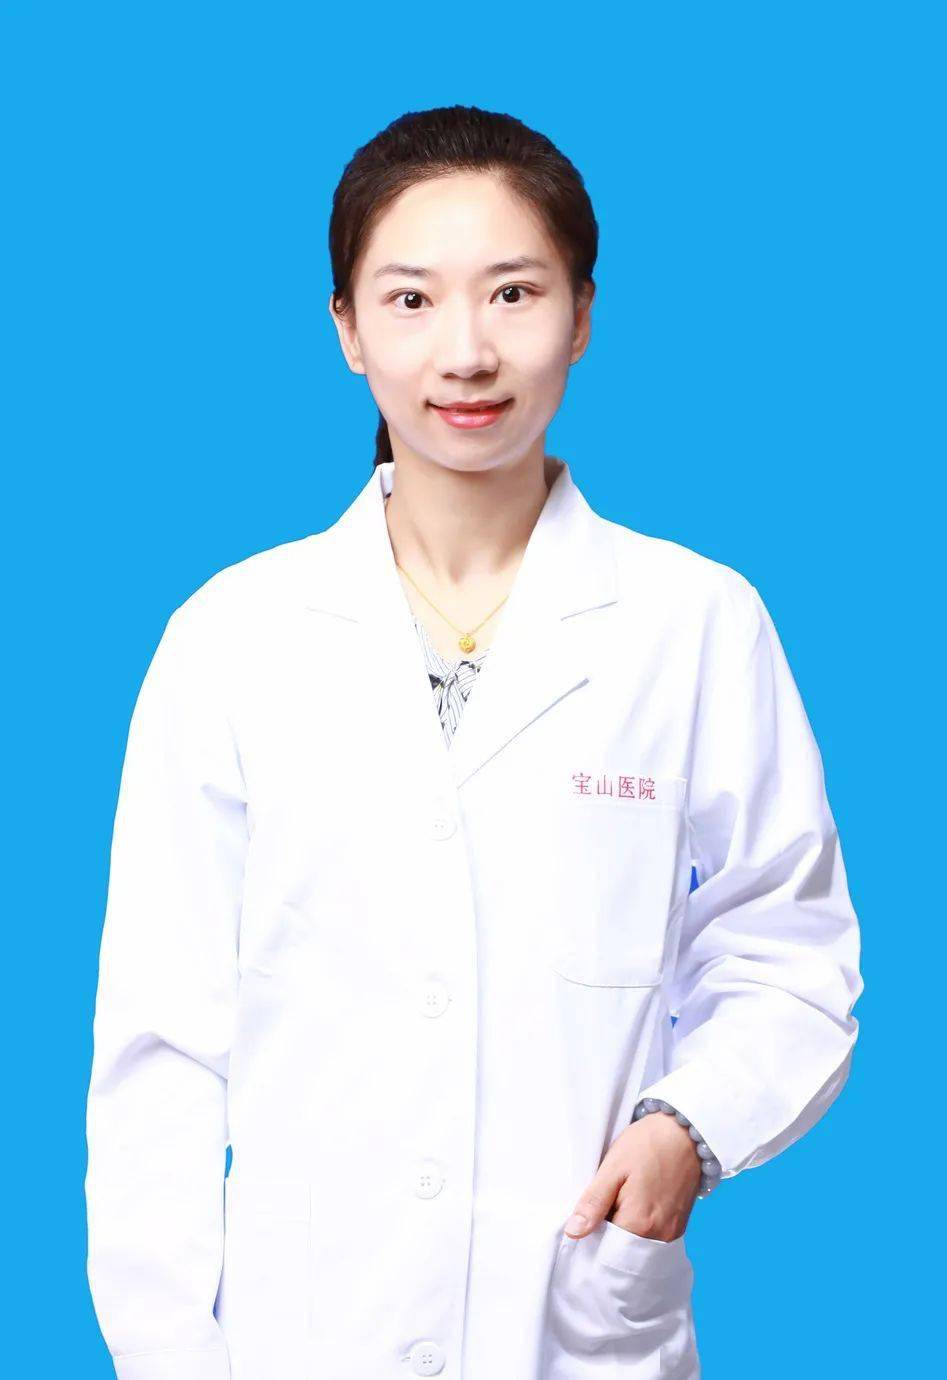 袁羽昀主治医师中医儿科学硕士毕业于上海中医药大学